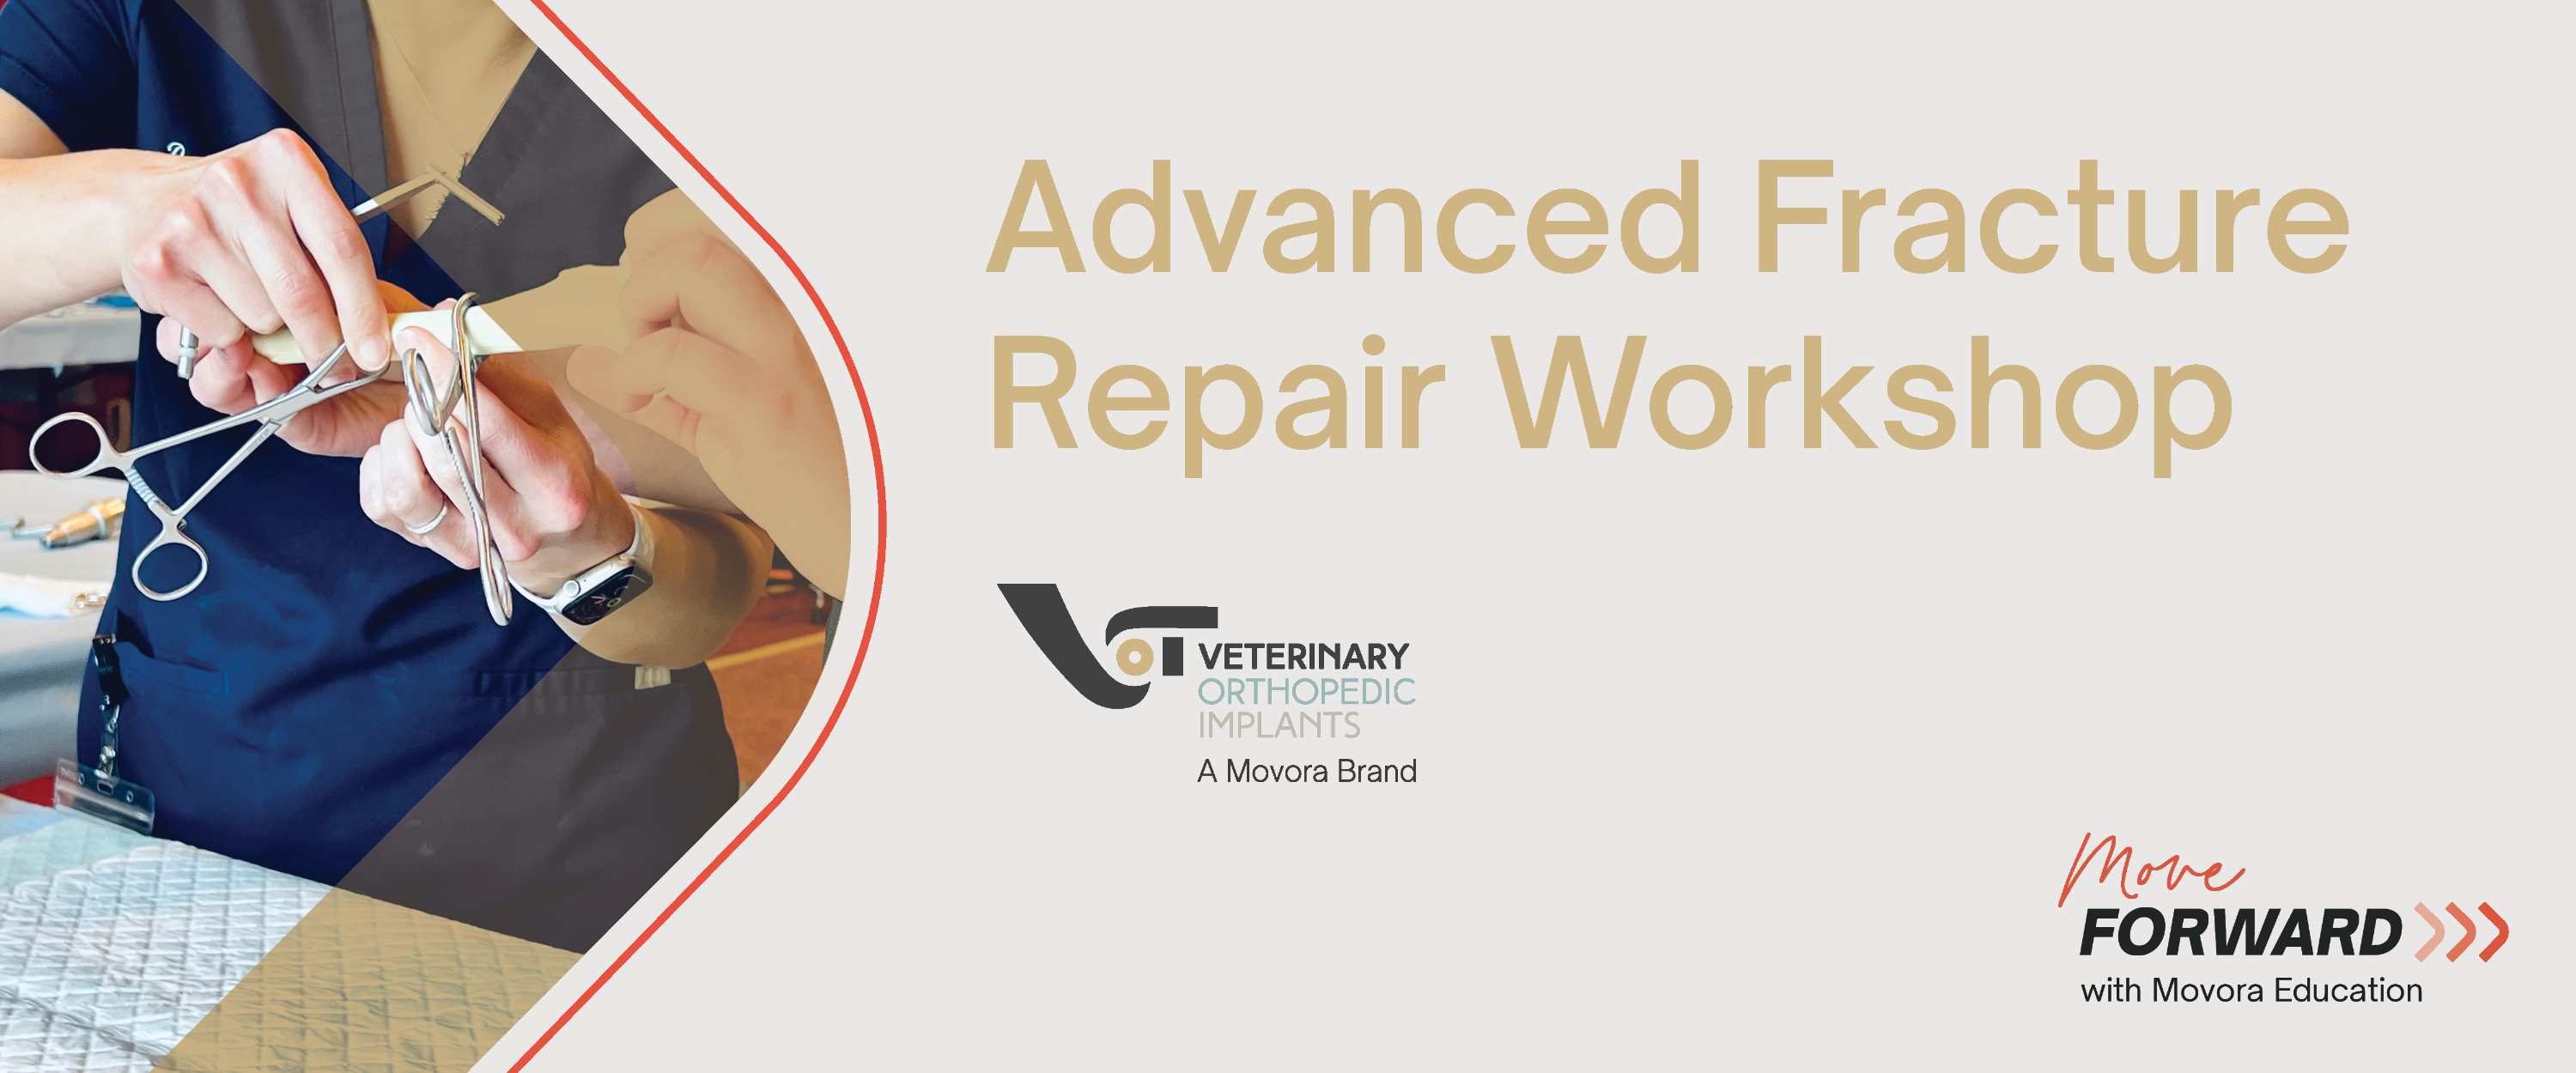 VOI Advanced Fracture Repair Workshop banner